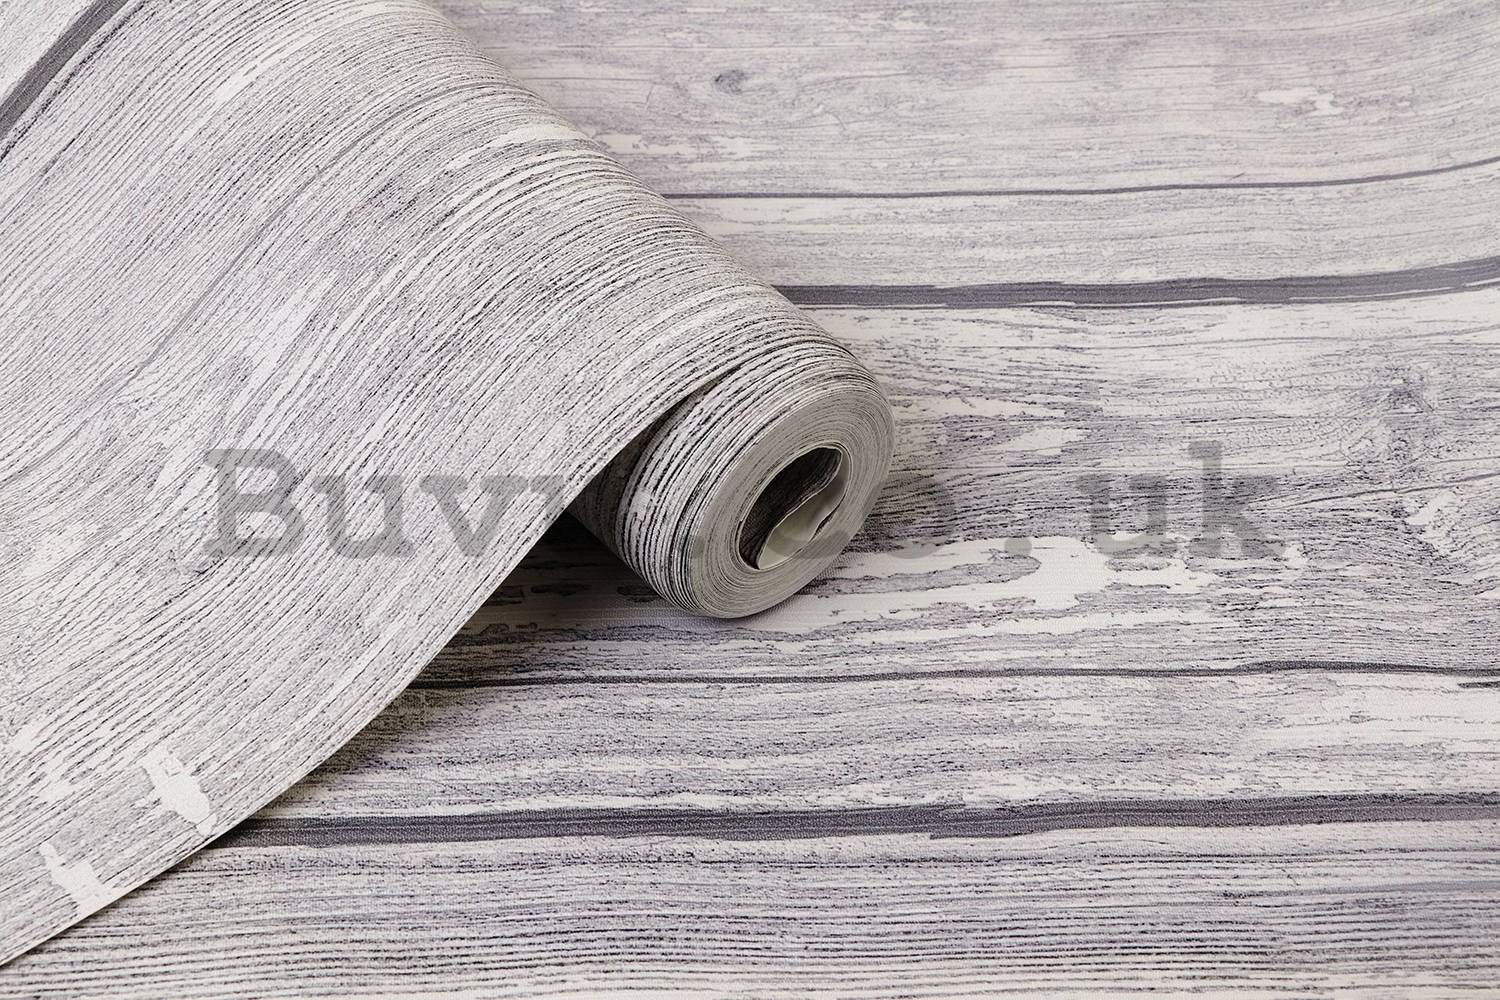 Vinyl wallpaper wood gray highlights